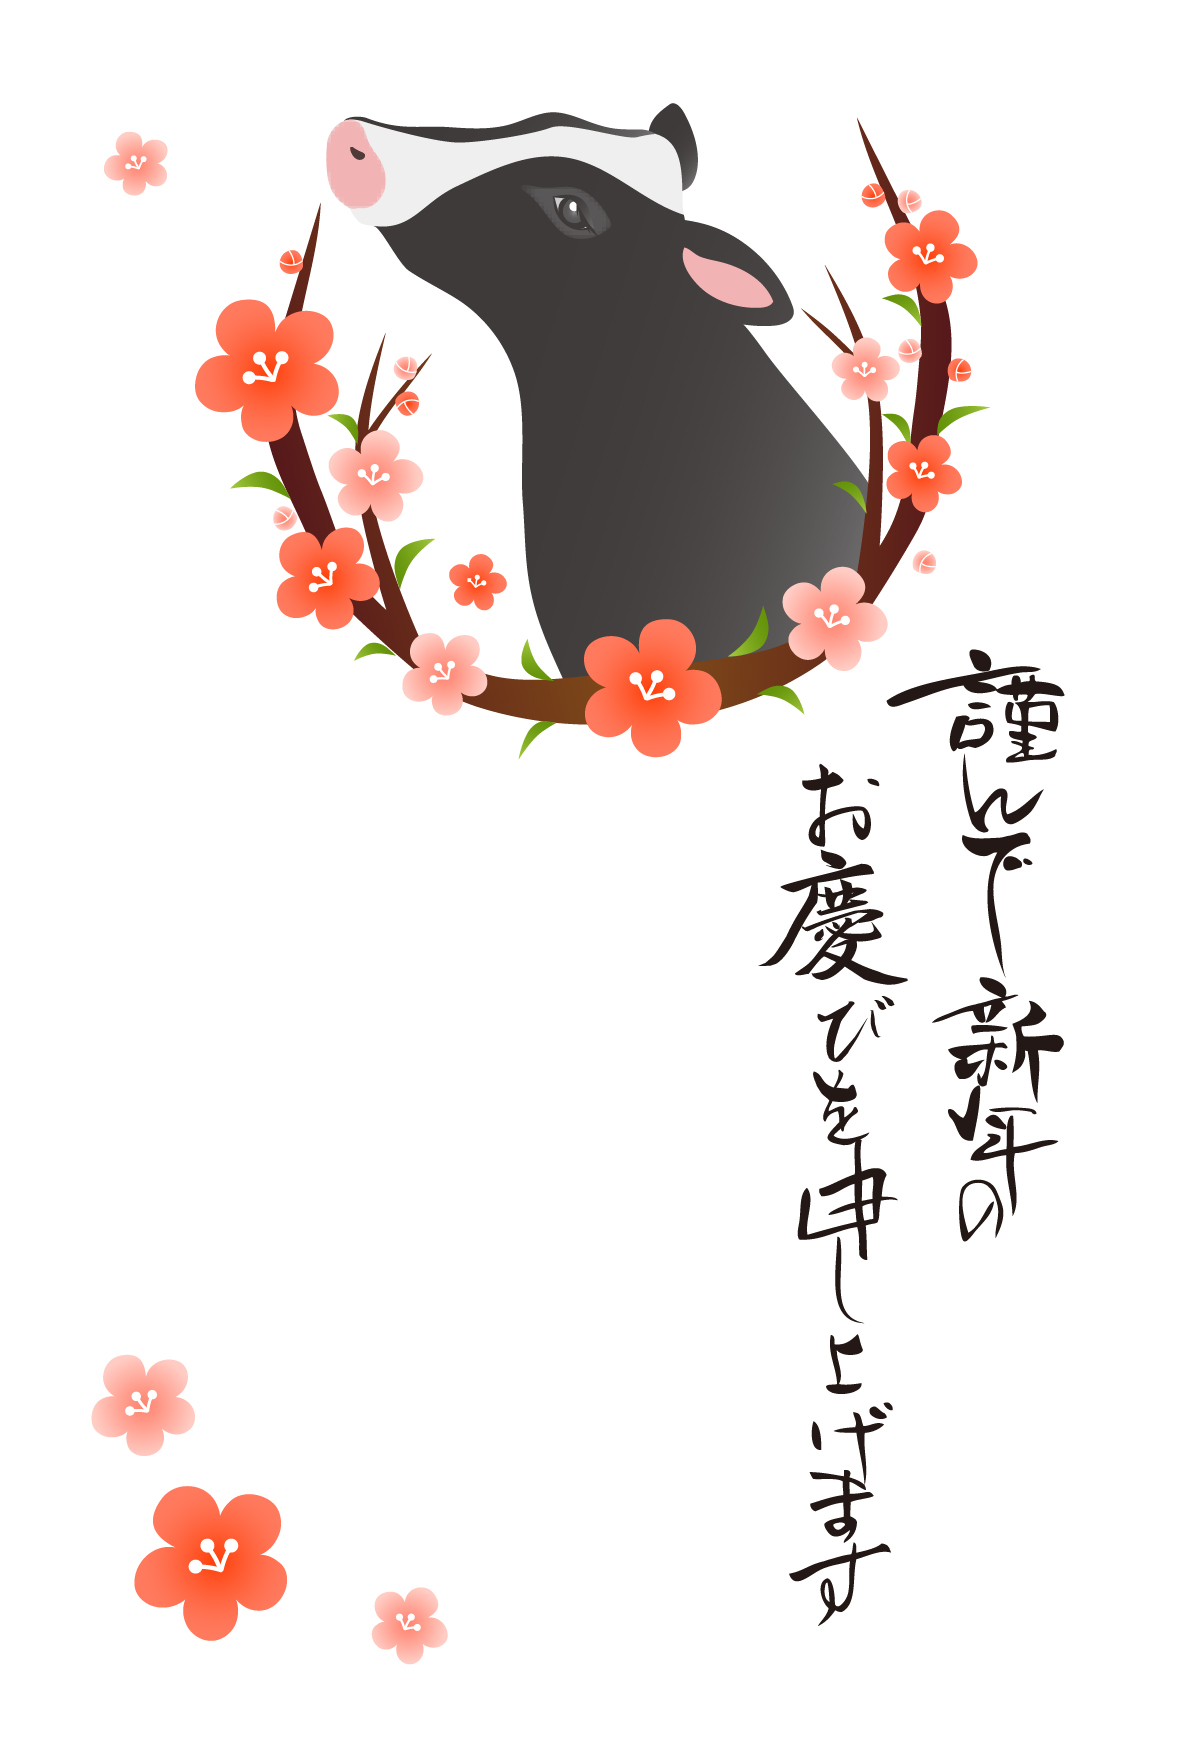 牛 丑 と梅の花の年賀状テンプレート